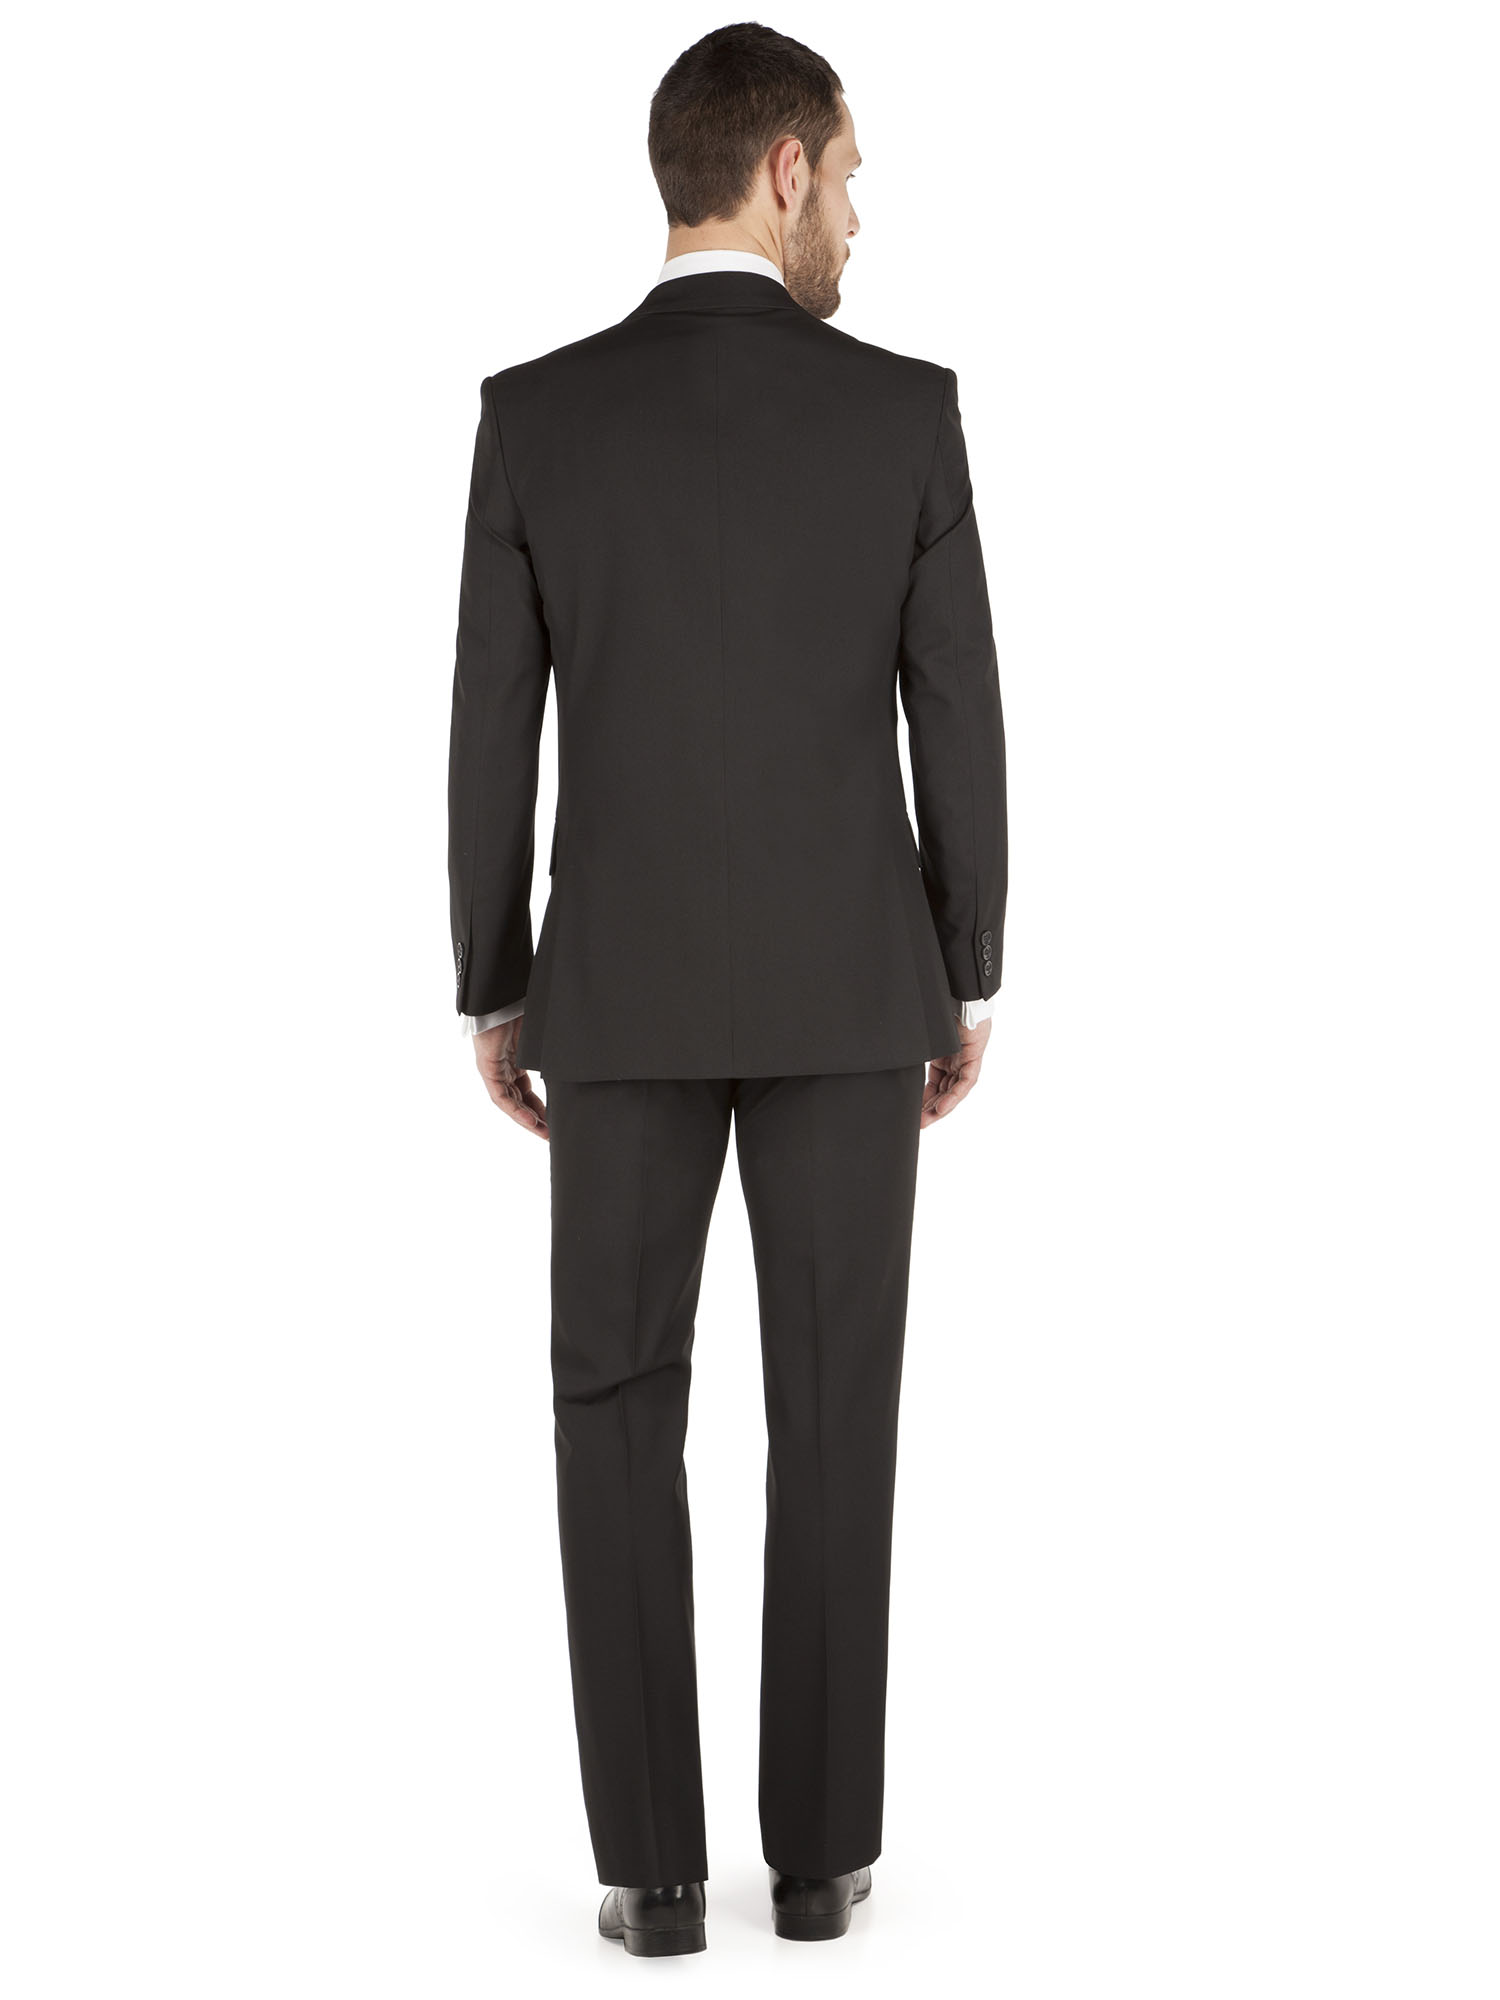 Alex 2 Button Plain Black Suit - Alexandre London - Two Piece Suits ...